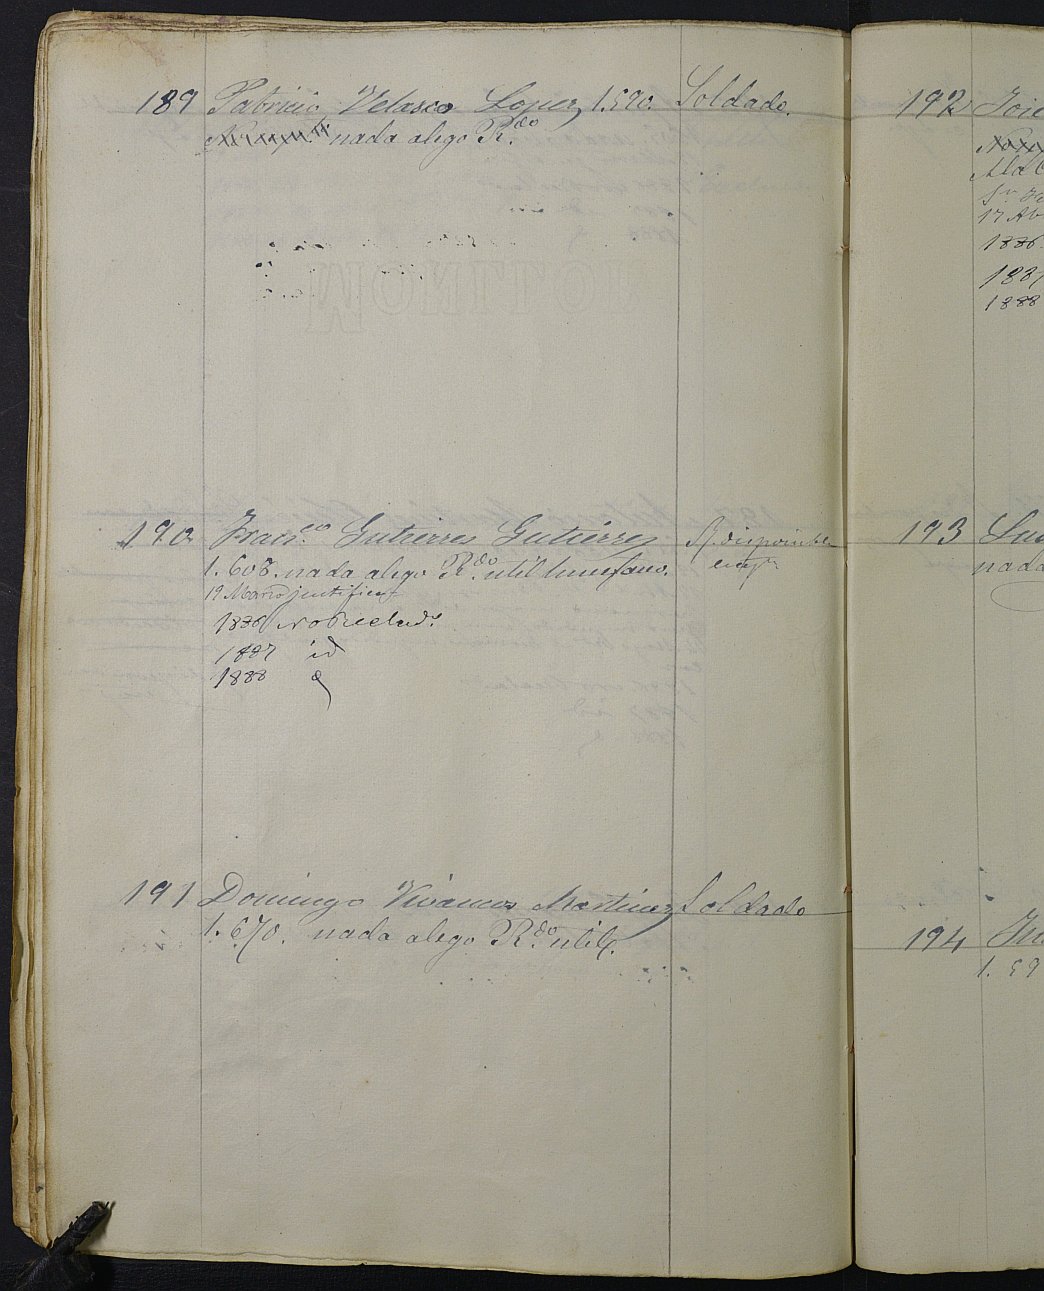 Relación de individuos declarados soldados e ingresados en Caja del Ayuntamiento de La Unión de 1885.